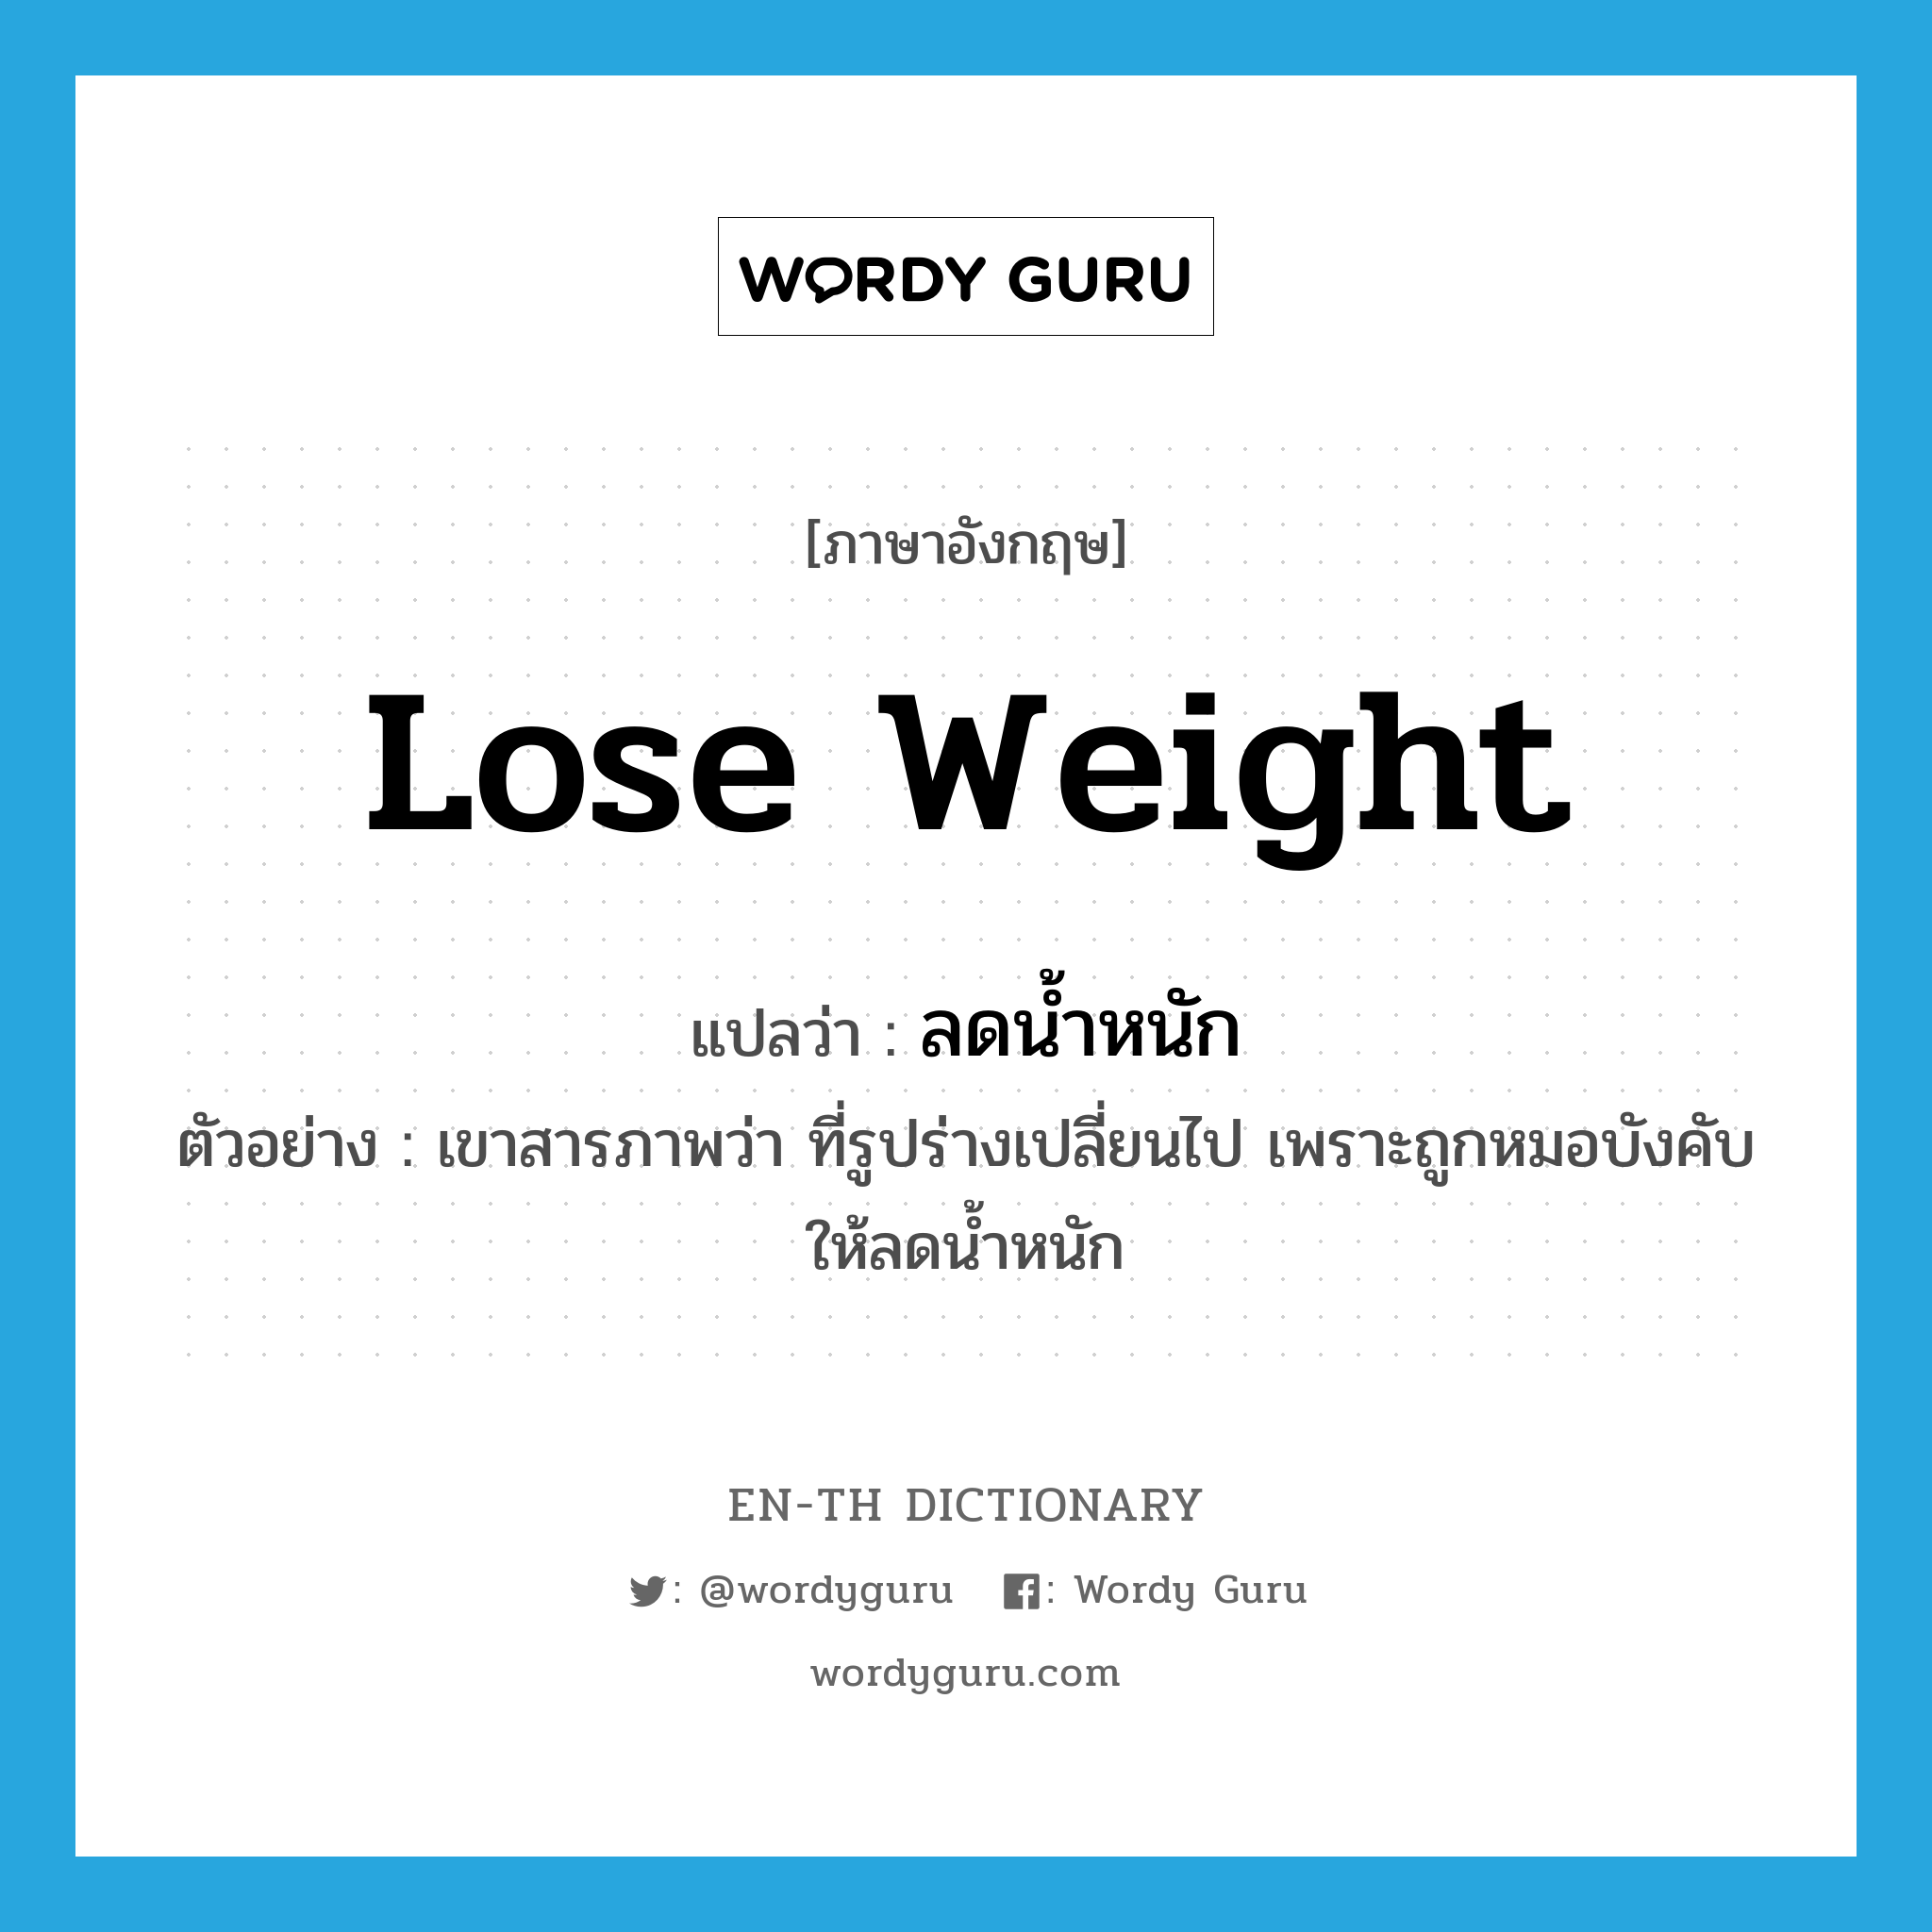 lose weight แปลว่า?, คำศัพท์ภาษาอังกฤษ lose weight แปลว่า ลดน้ำหนัก ประเภท V ตัวอย่าง เขาสารภาพว่า ที่รูปร่างเปลี่ยนไป เพราะถูกหมอบังคับให้ลดน้ำหนัก หมวด V